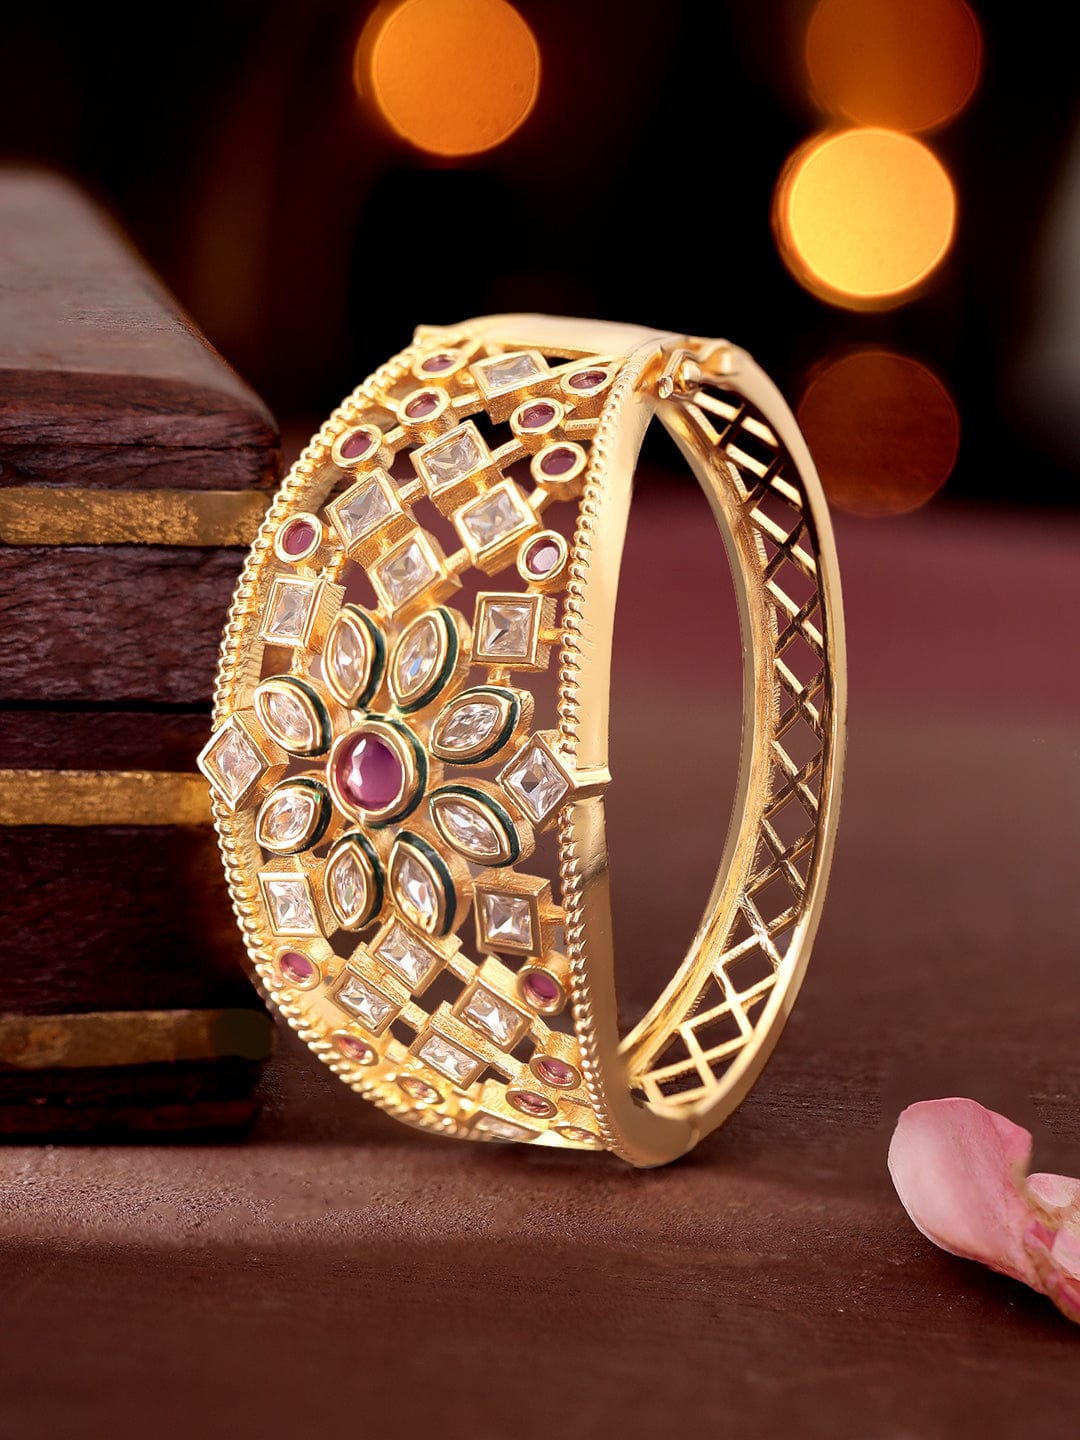 OVAL BRACELET WITH DIAMOND SPIKES | Spike bracelet, Mens bracelet designs,  18k gold bracelet